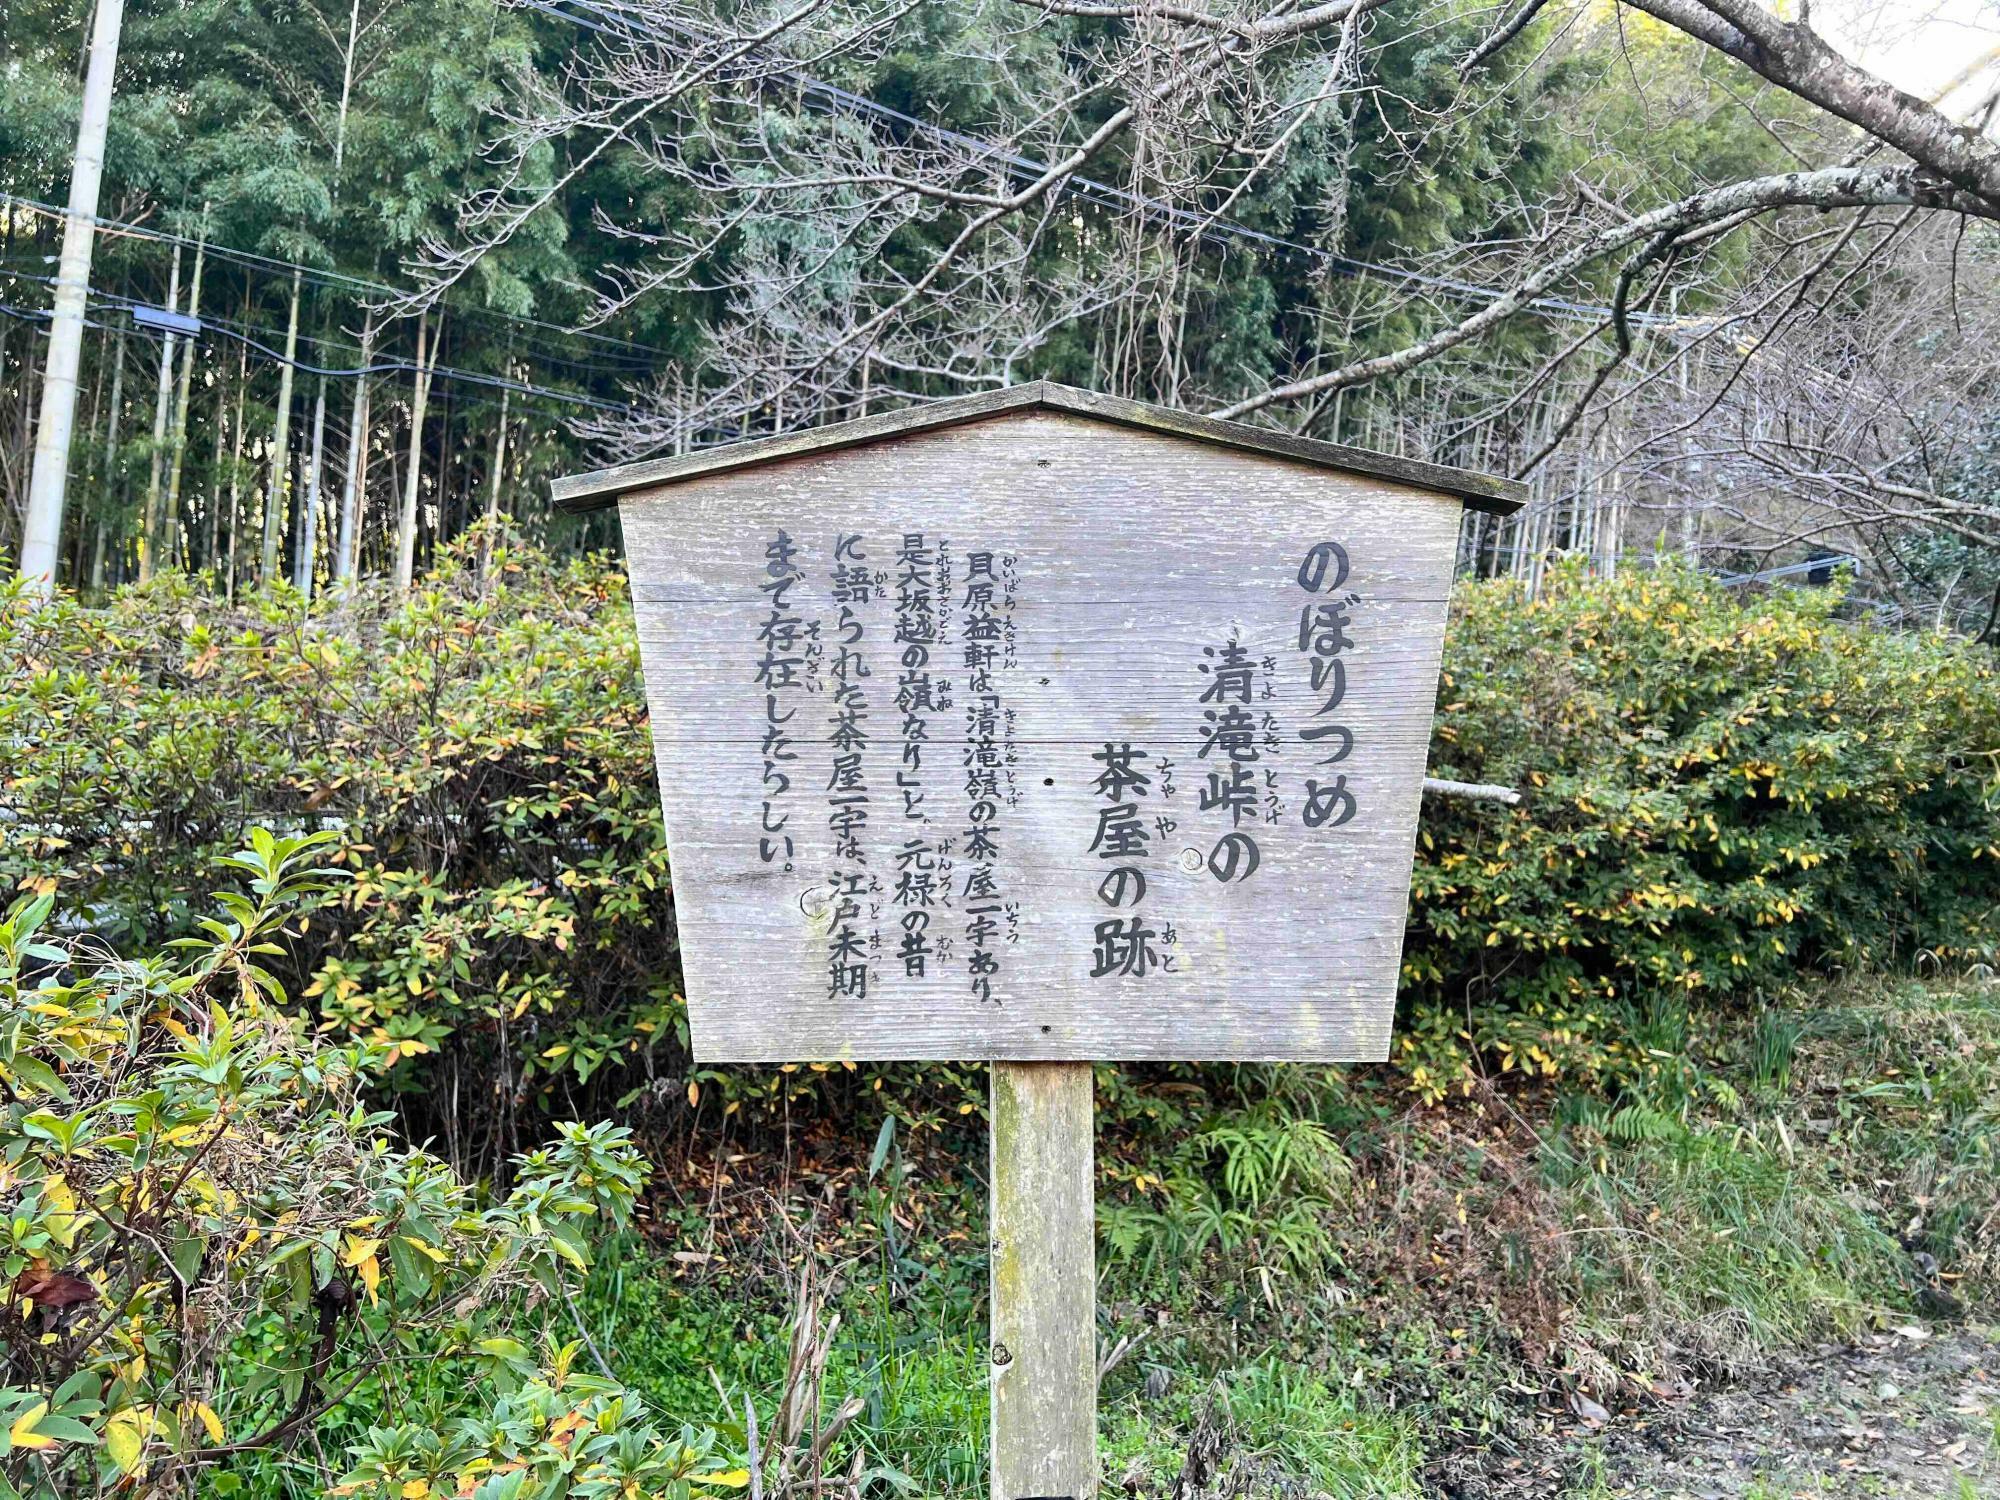 別の木の札も。清武峠には江戸時代末期まで茶屋があったことが記されていました